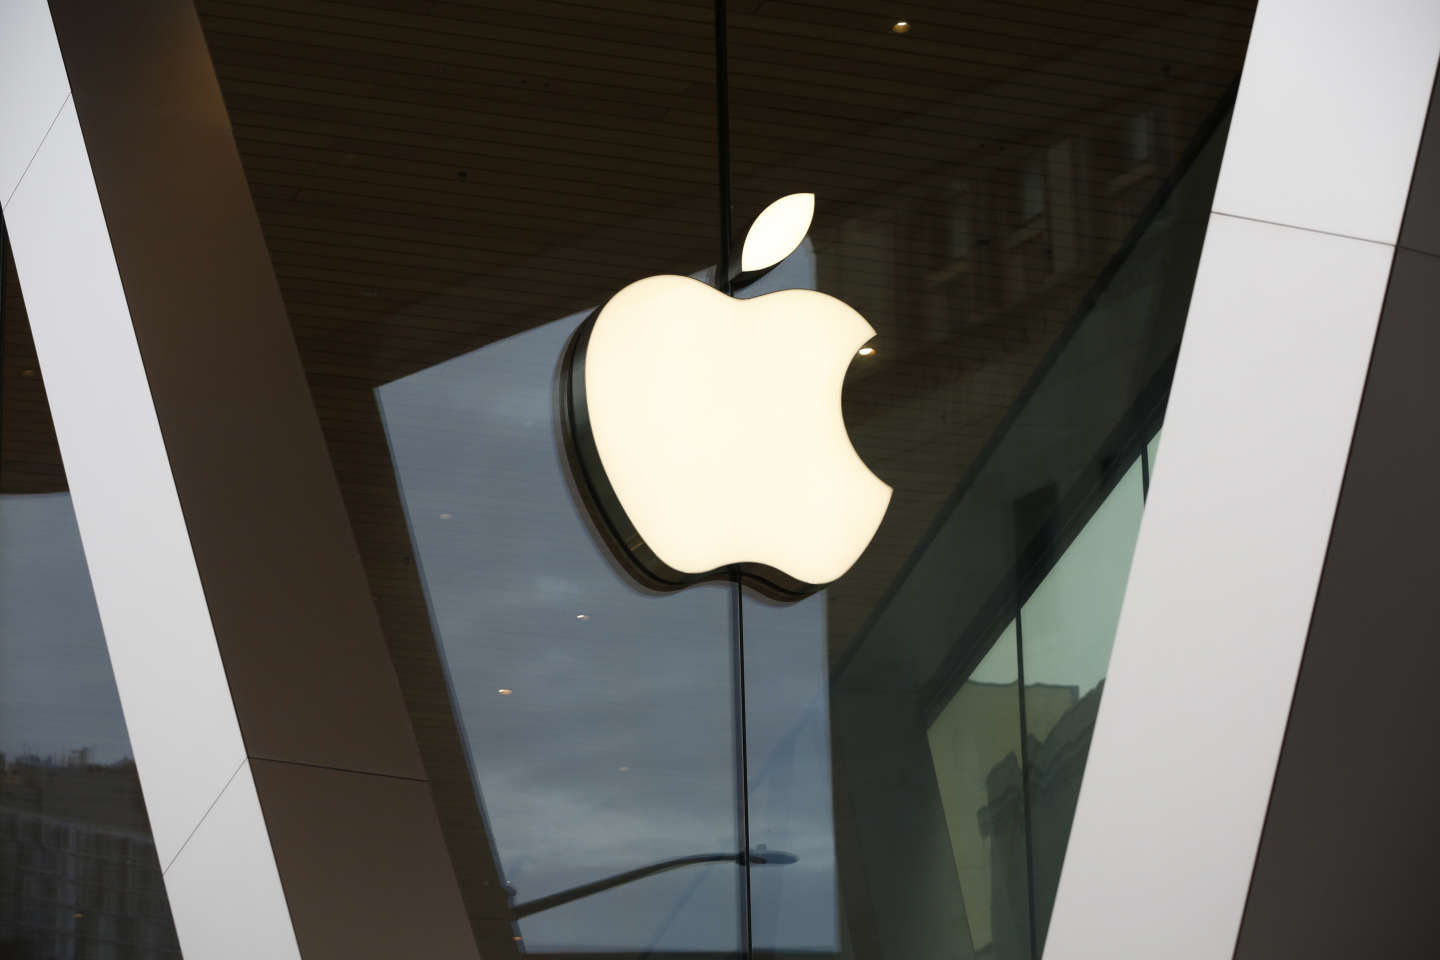 l’éditeur de « Fortnite » échoue à faire établir par la justice le monopole d’Apple